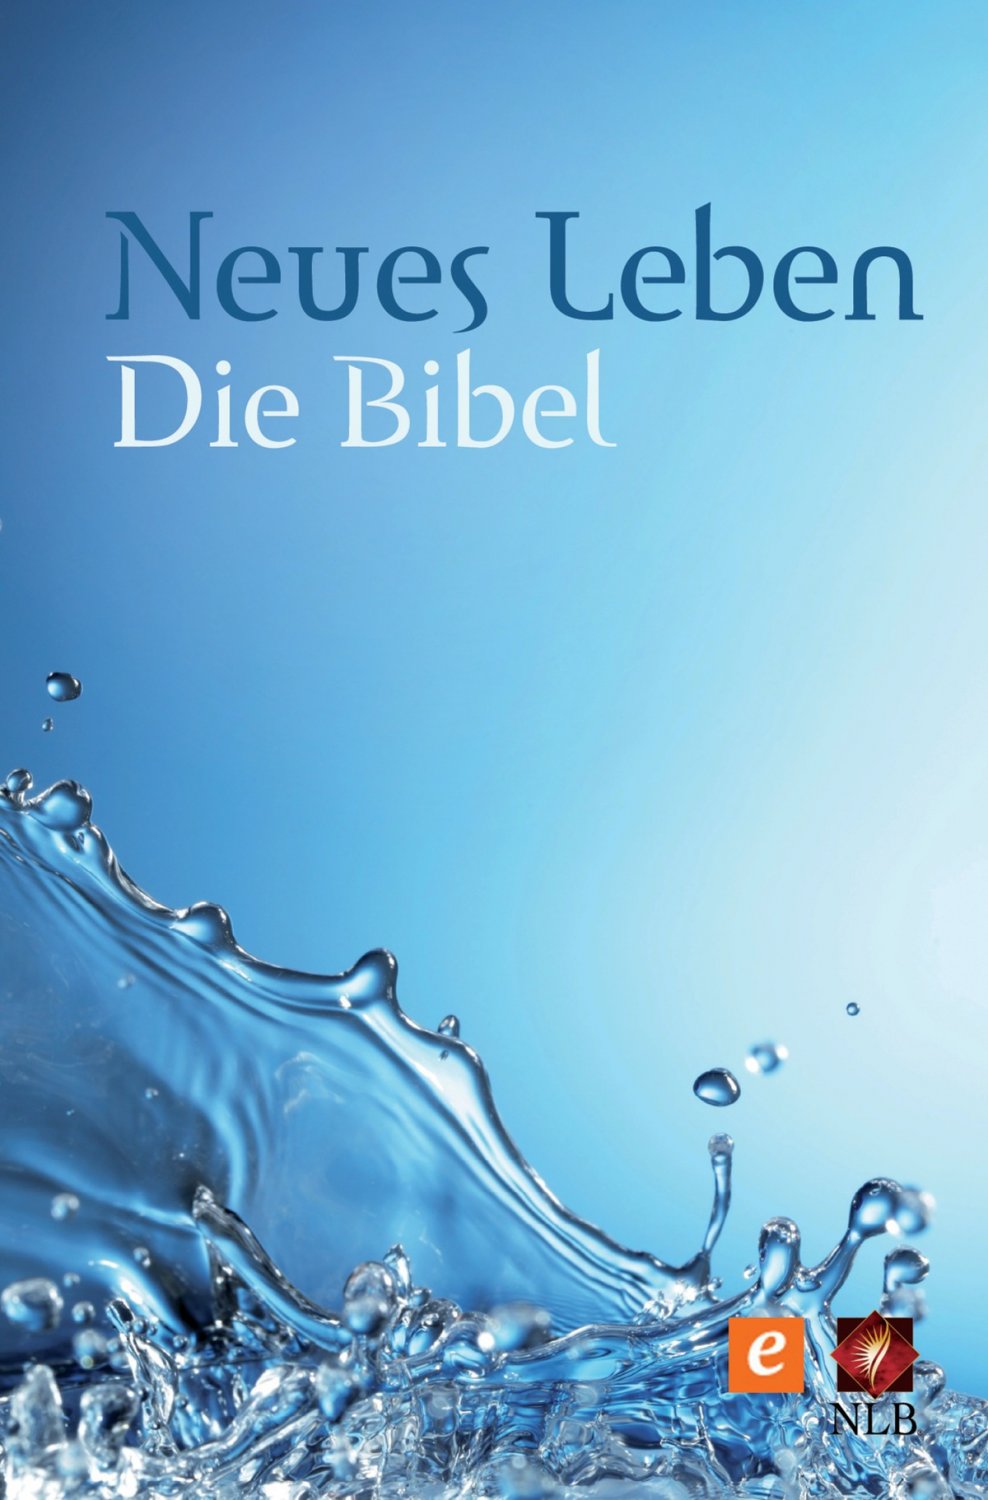 Jesus Ich Bin Traurig Froh Ulrich Schaffer Buch Gebraucht Kaufen A02gvpwu01zz3